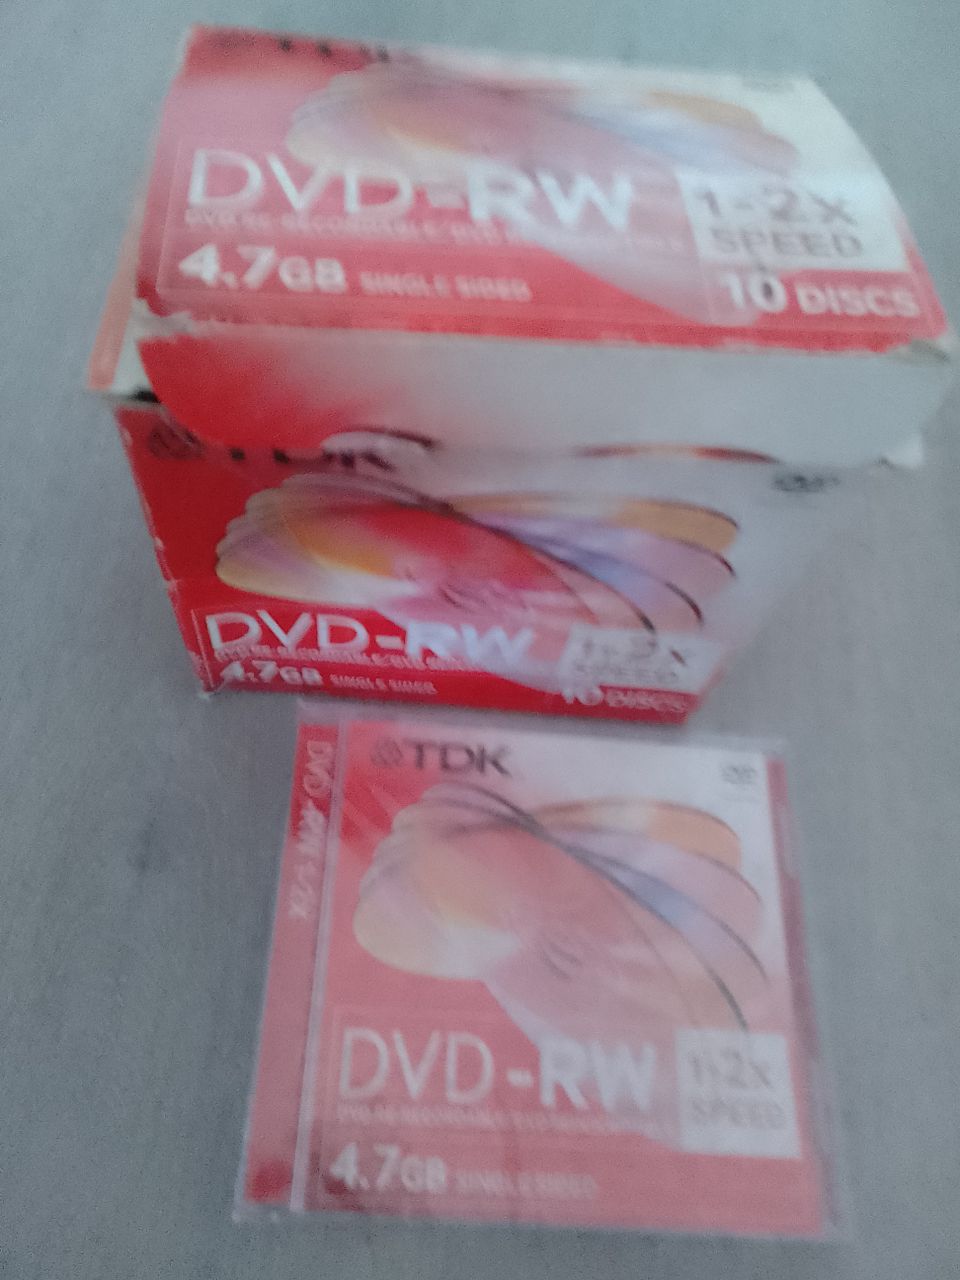 Tyhjiä Dvd-RW-levyjä (uudelleen kirjoitettavia)